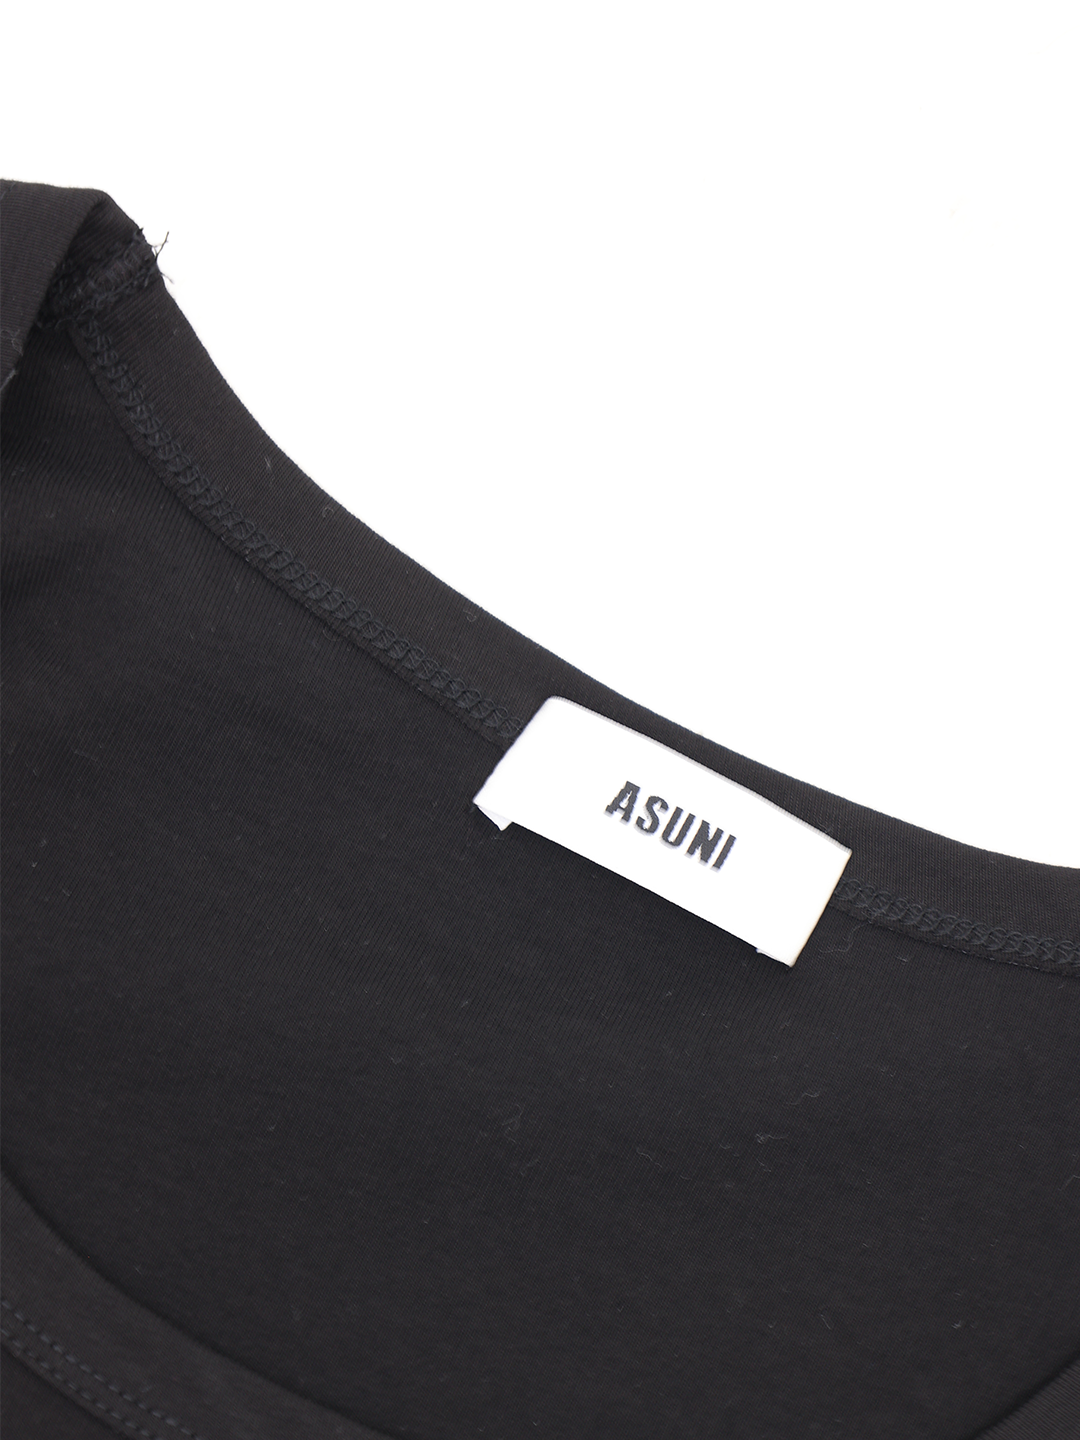 ASUNI CLUB 3D Logo Letter T-Shirt (Black)